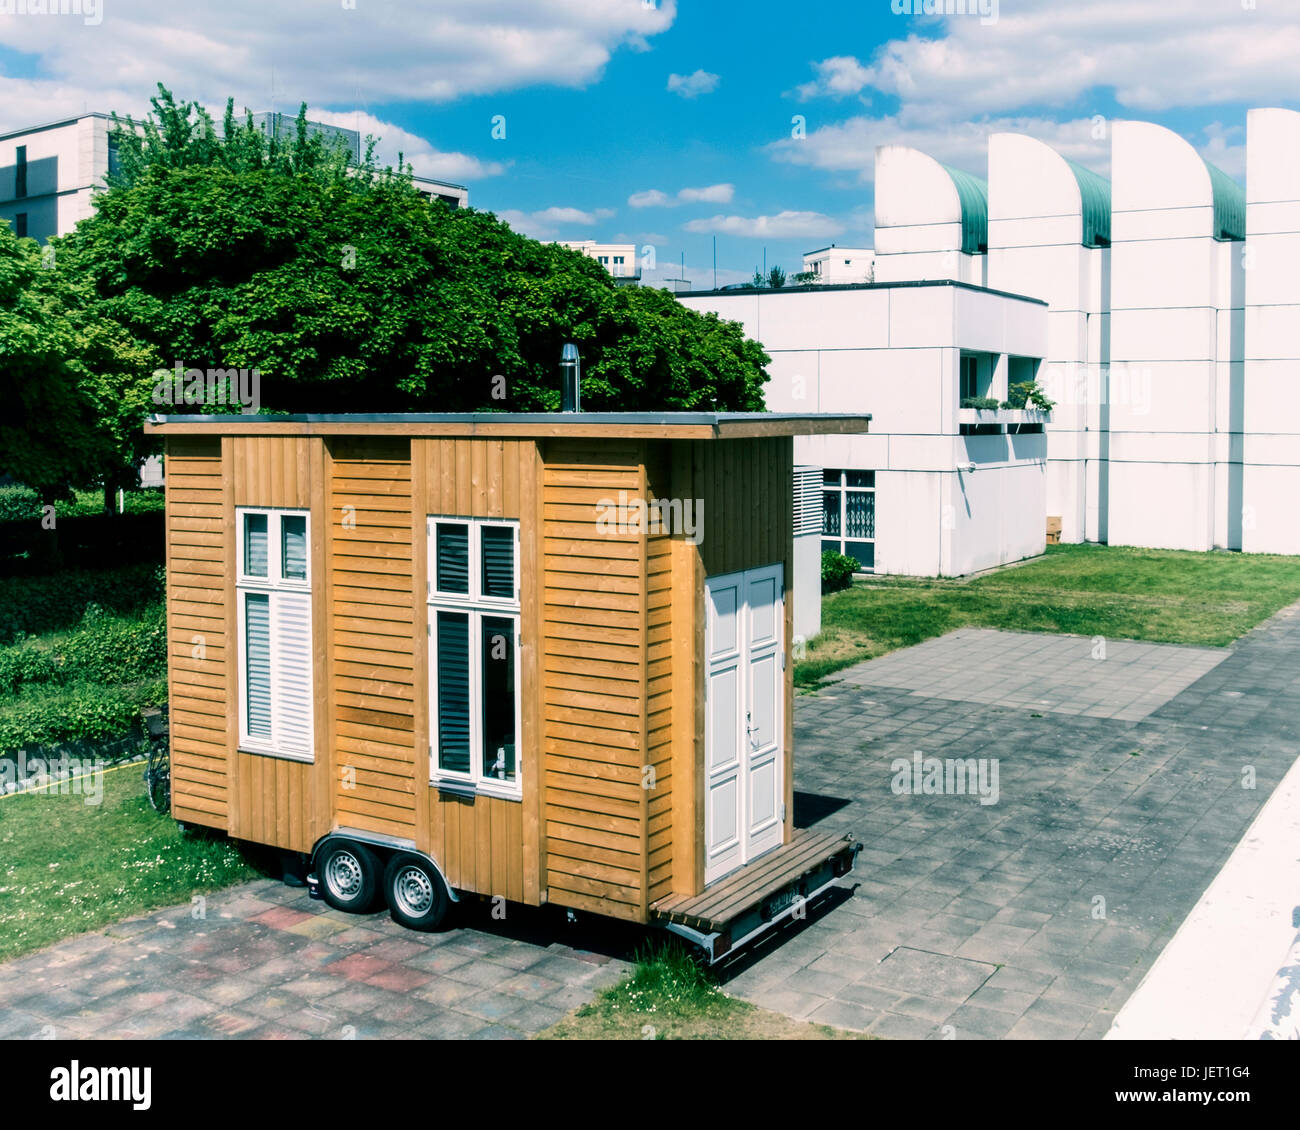 Archives Bauhaus,Berlin-Tiergarten campus. Tinyhouse projet universitaire, 20 petites maisons mobiles, 10 mètres carrés sur roues, abordable villa temporaire Banque D'Images